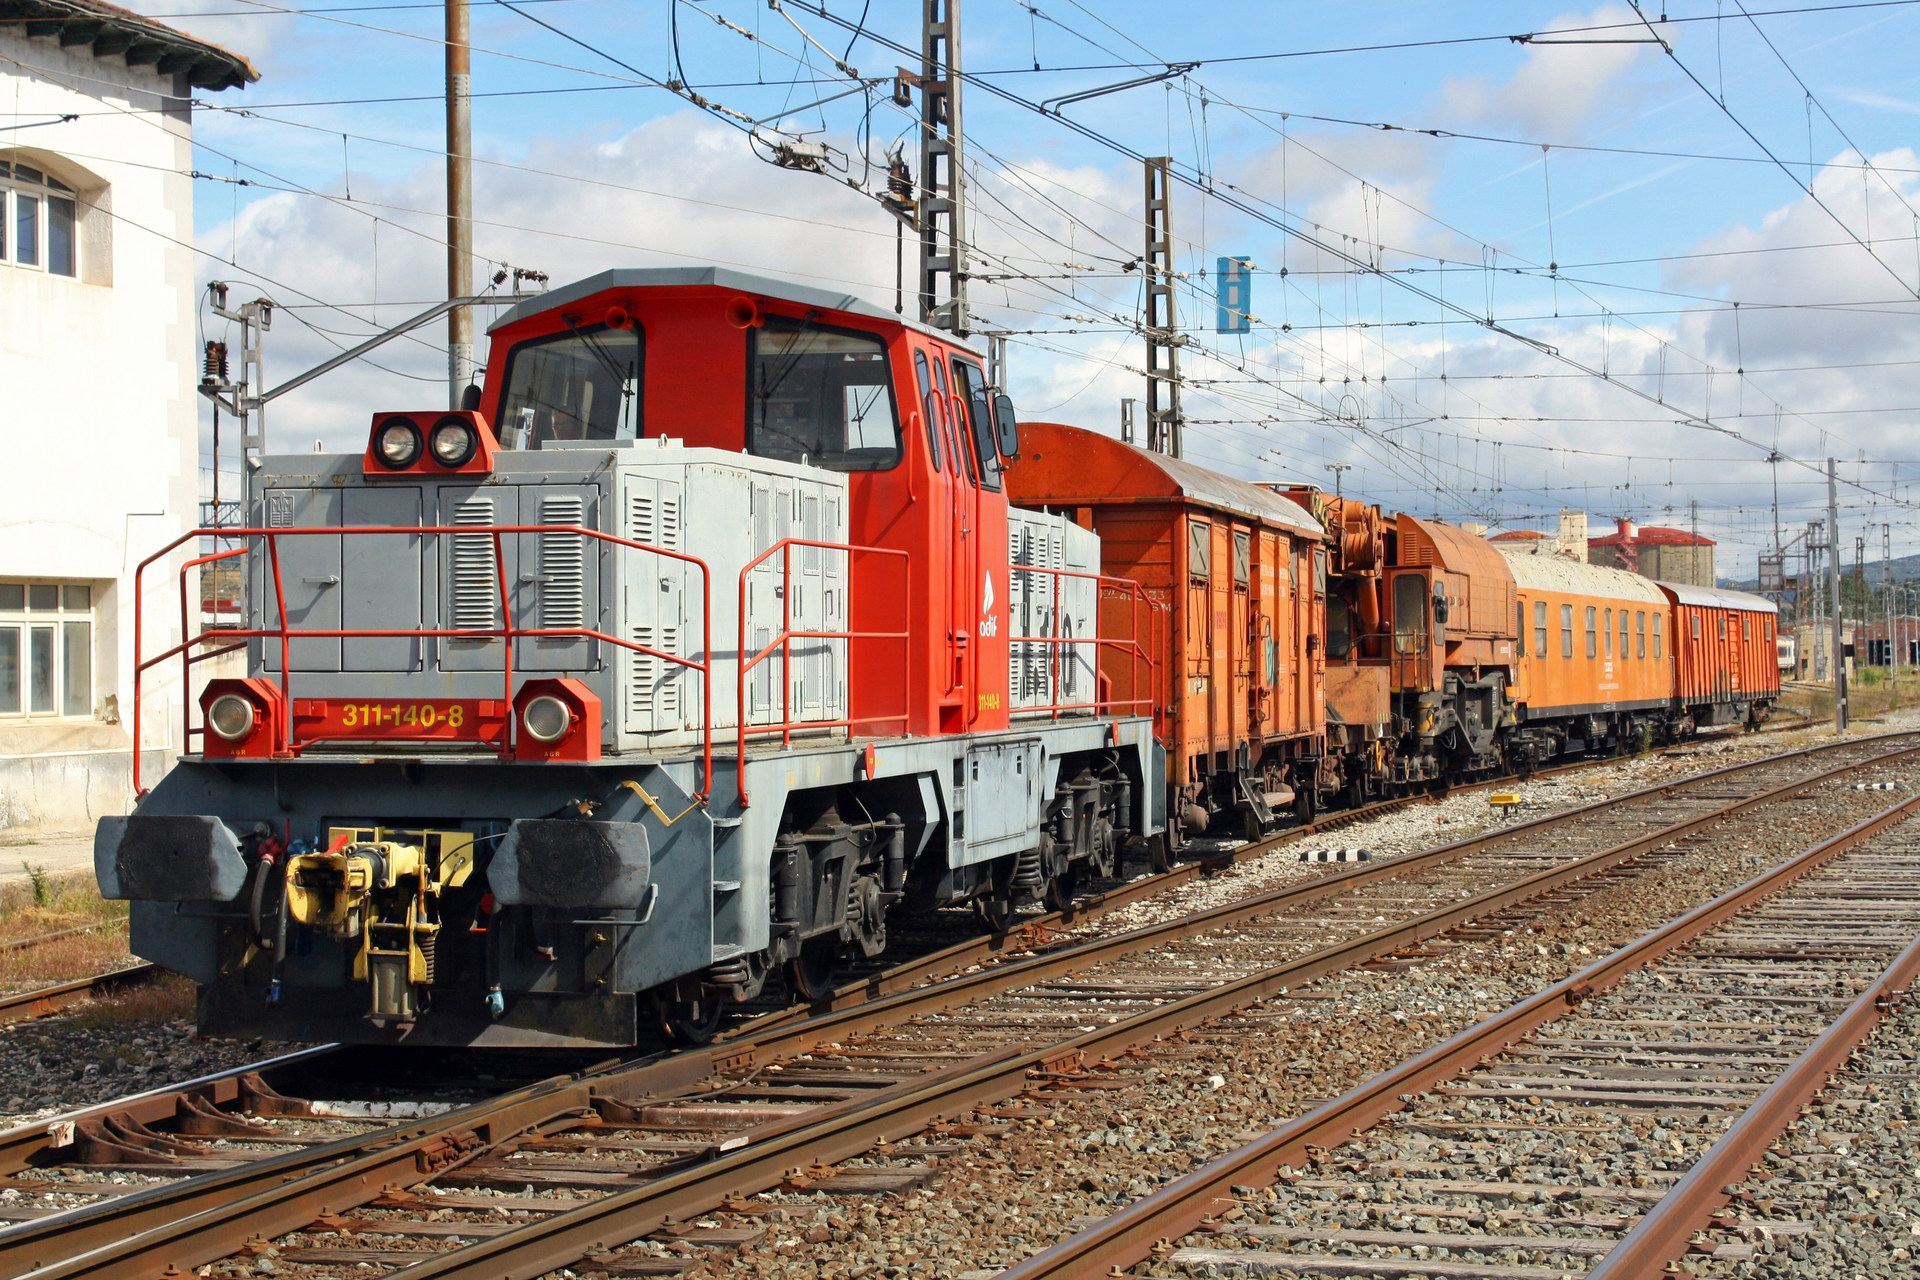 ADIF 311.1 140 / Estacion FFCC Miranda de Ebro — Trainspo